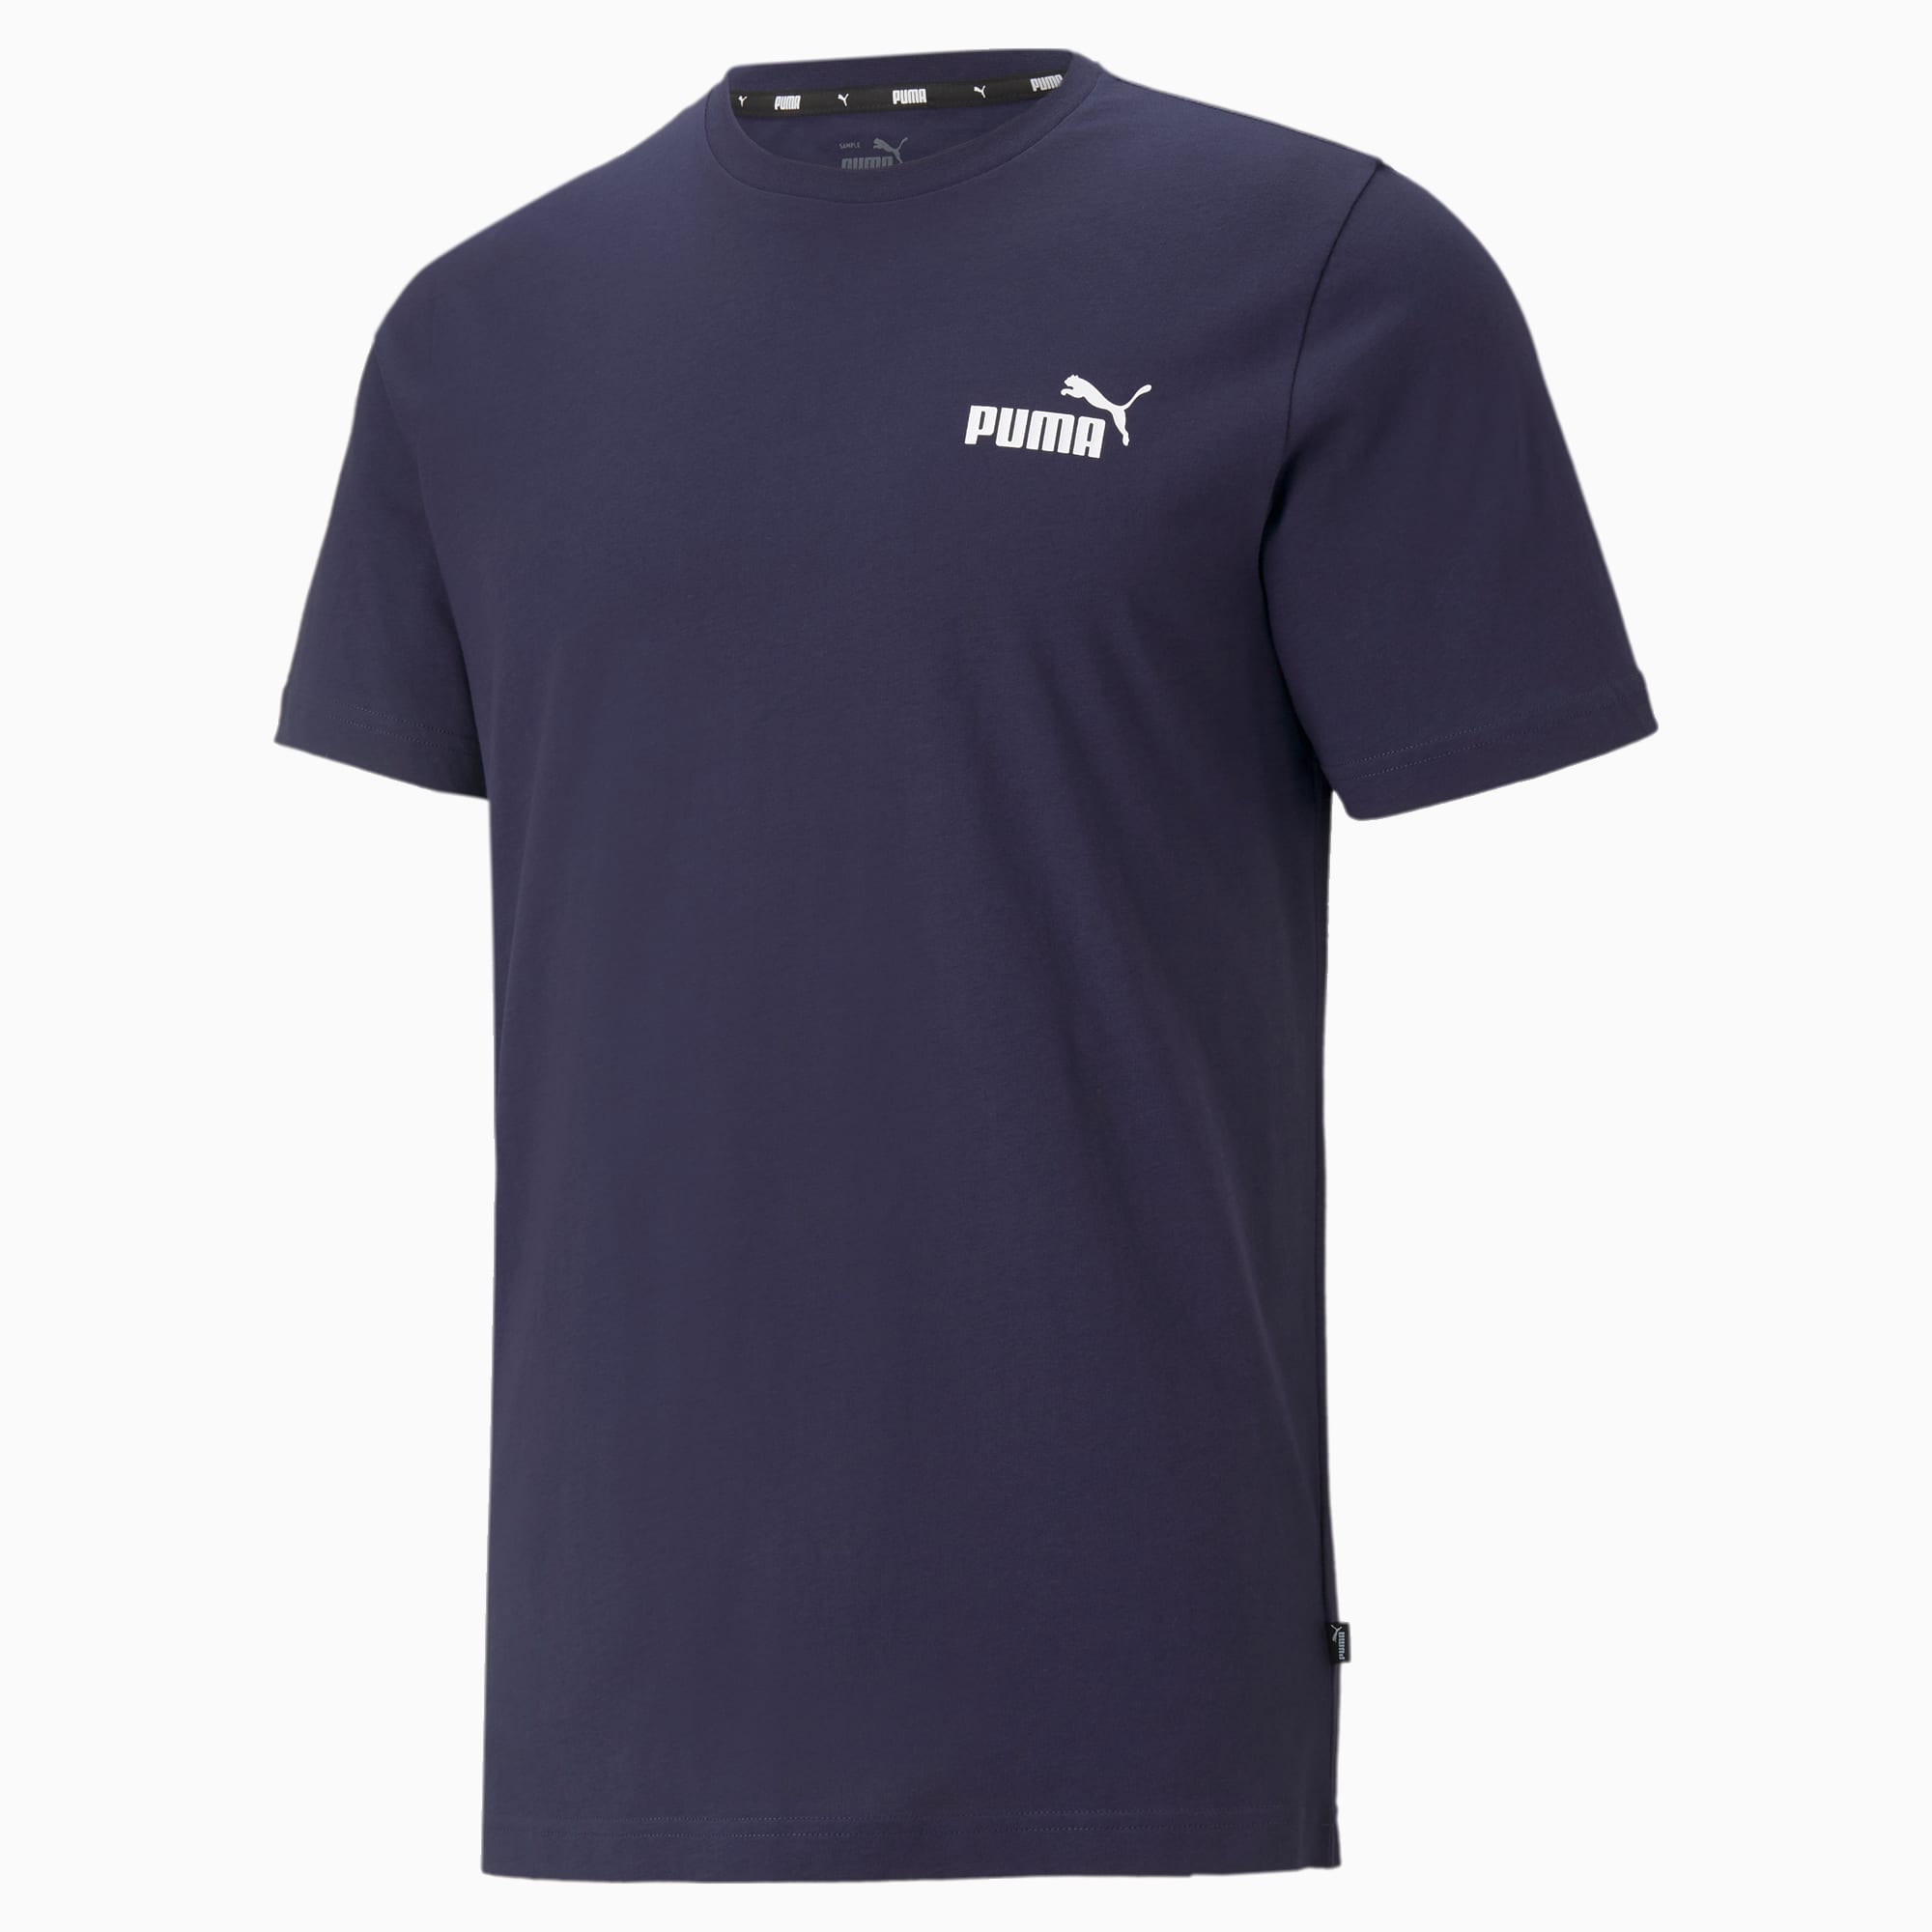 PUMA Essentials Small Logo T-Shirt Men, Peacoat